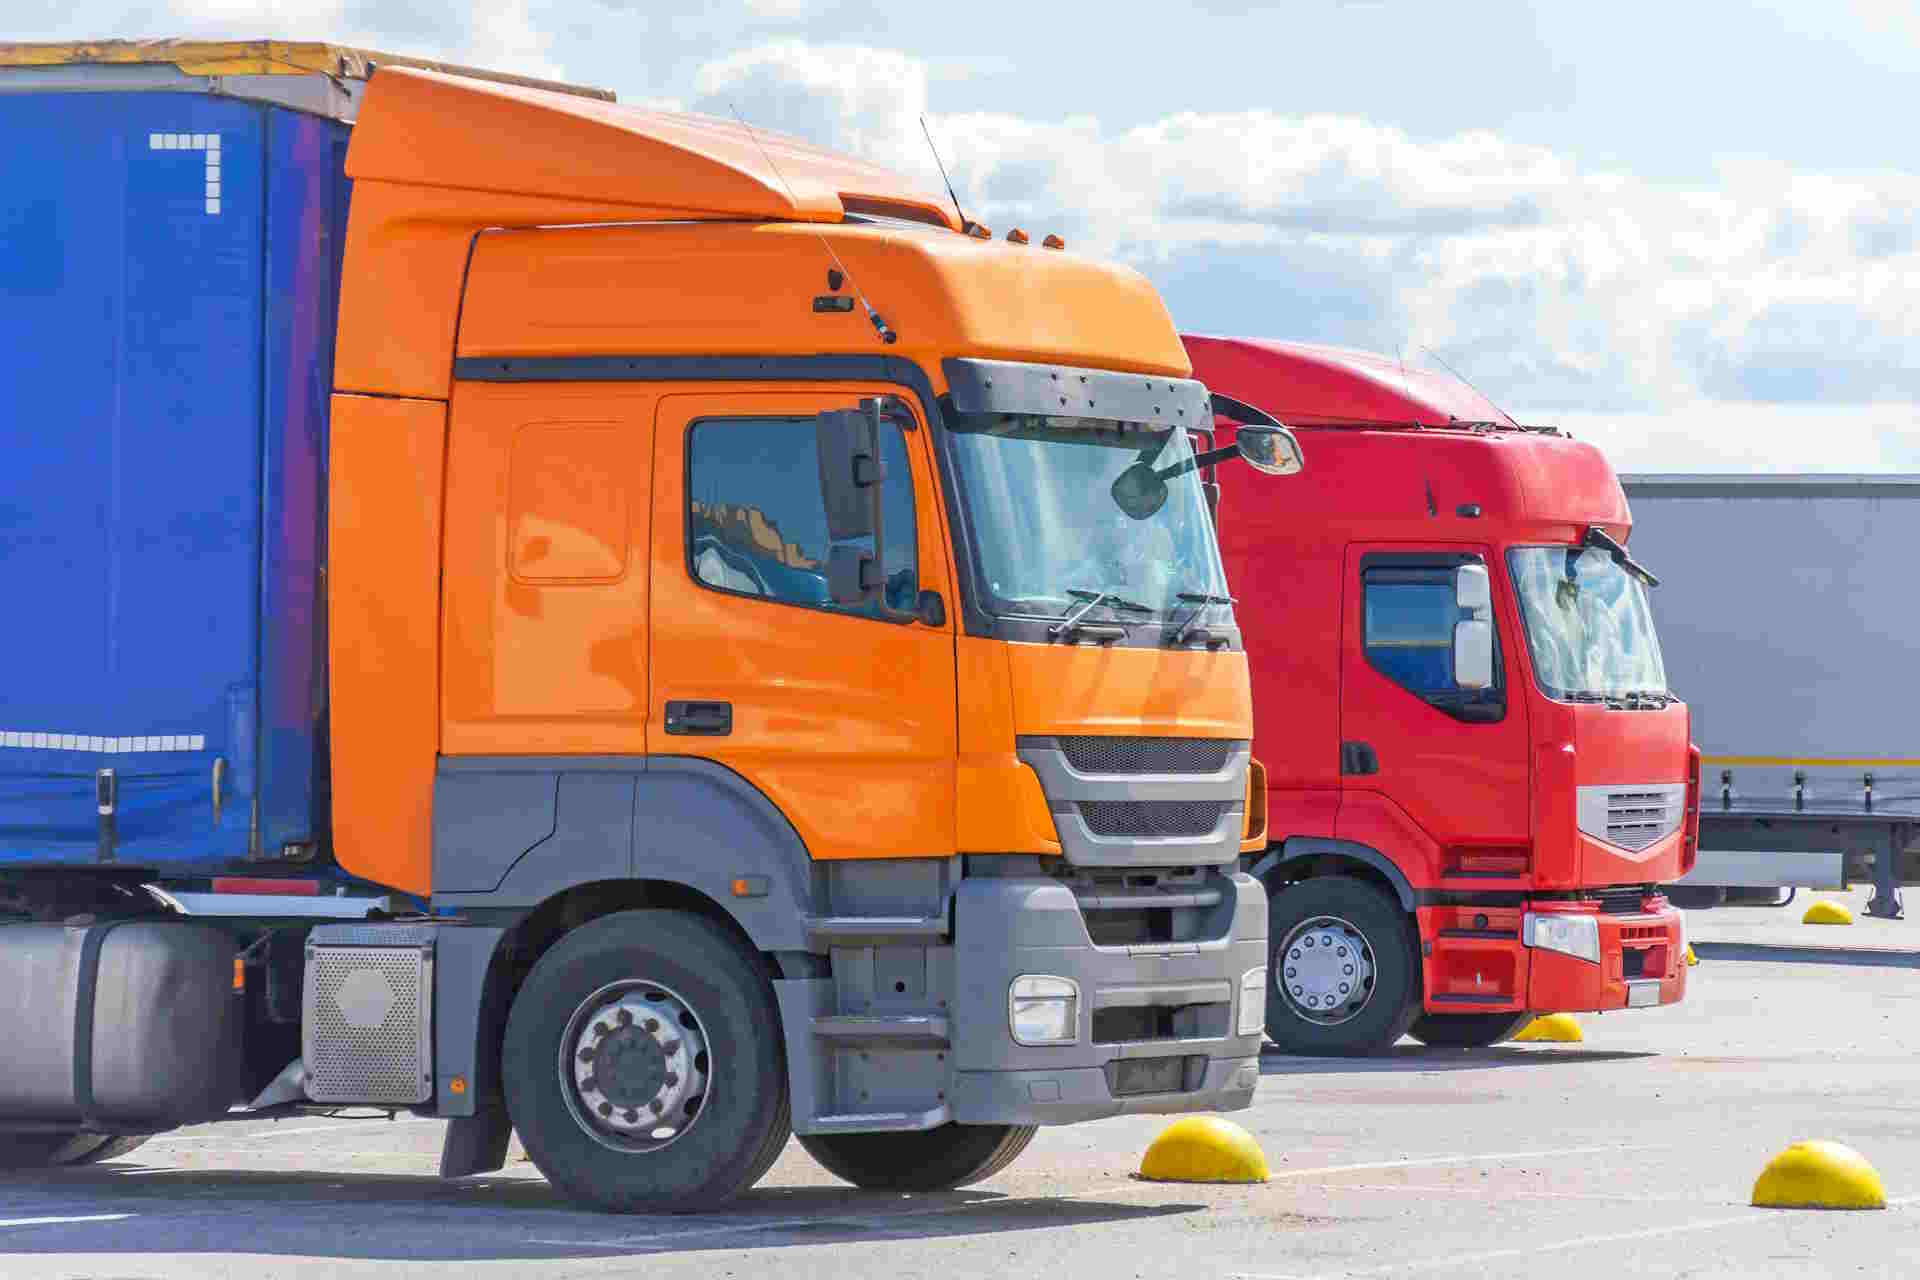 Camion: alcolock anche sui veicoli pesanti in caso di infrazioni